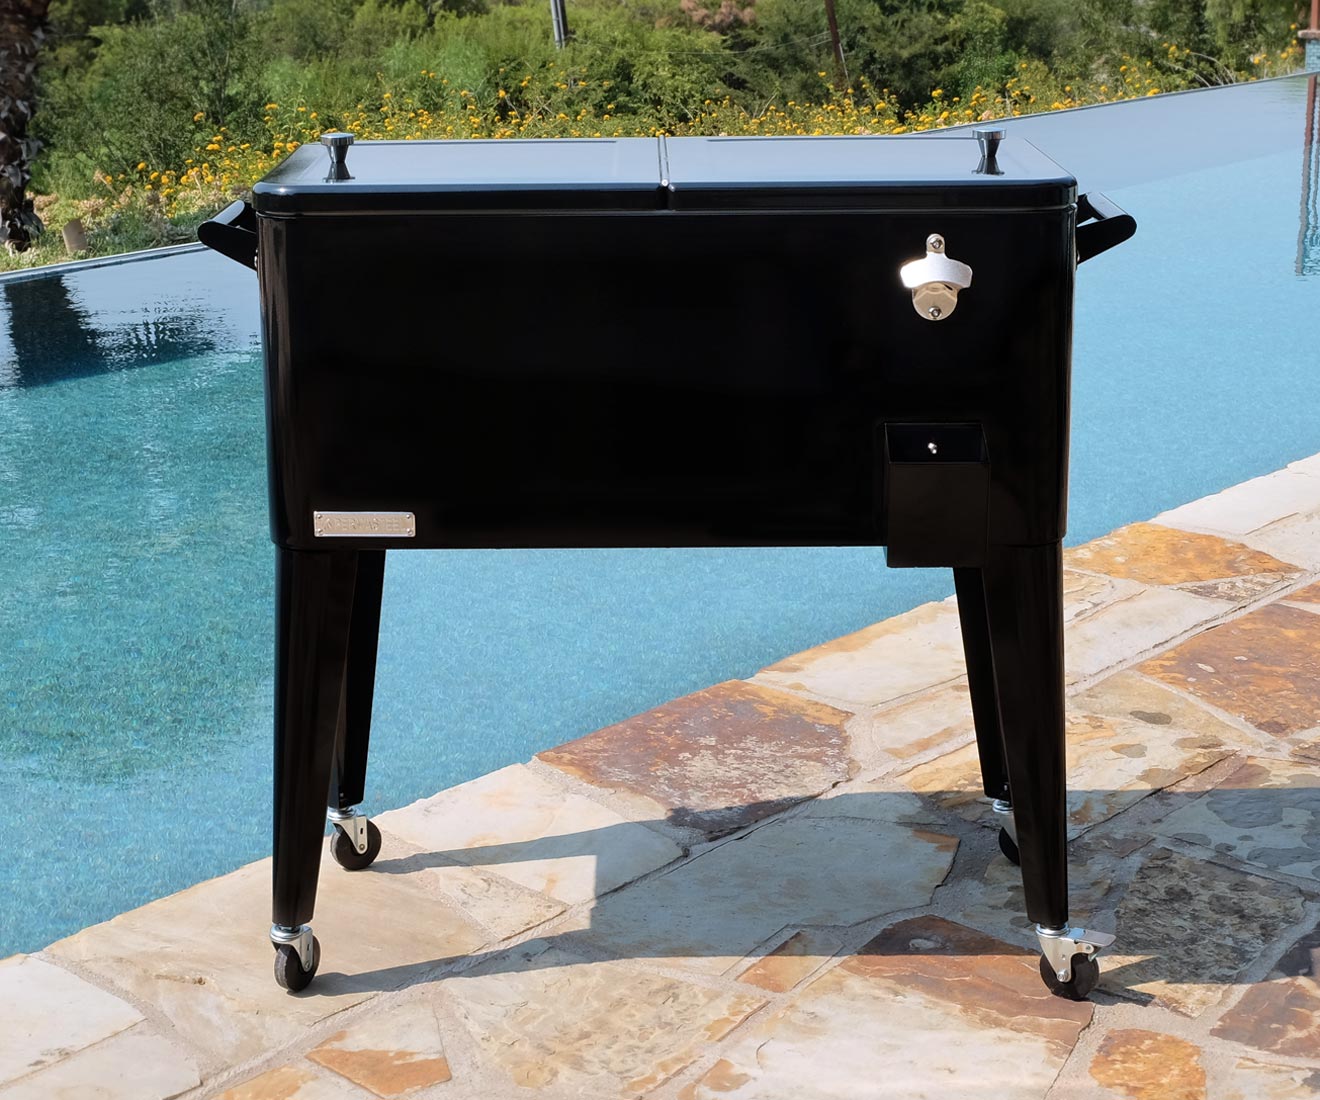 Permasteel PS-203 Patio Cooler in Black Lifestyle Look in Pool Side Setting